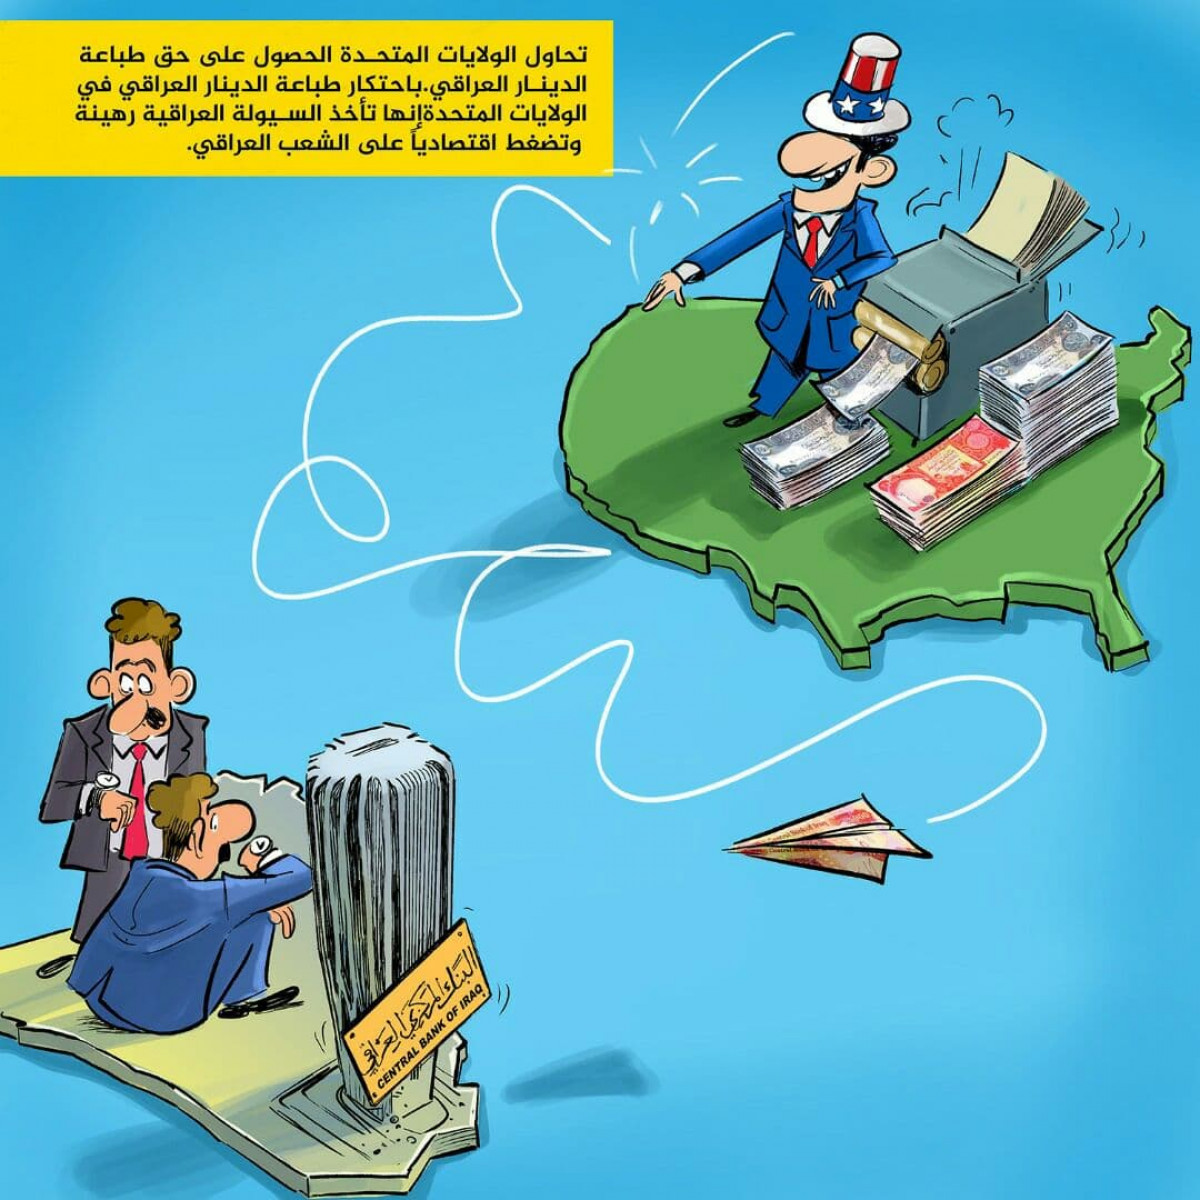 كاريكاتير / إحتكار طباعة الدينار العراقي في الولايات المتحدة